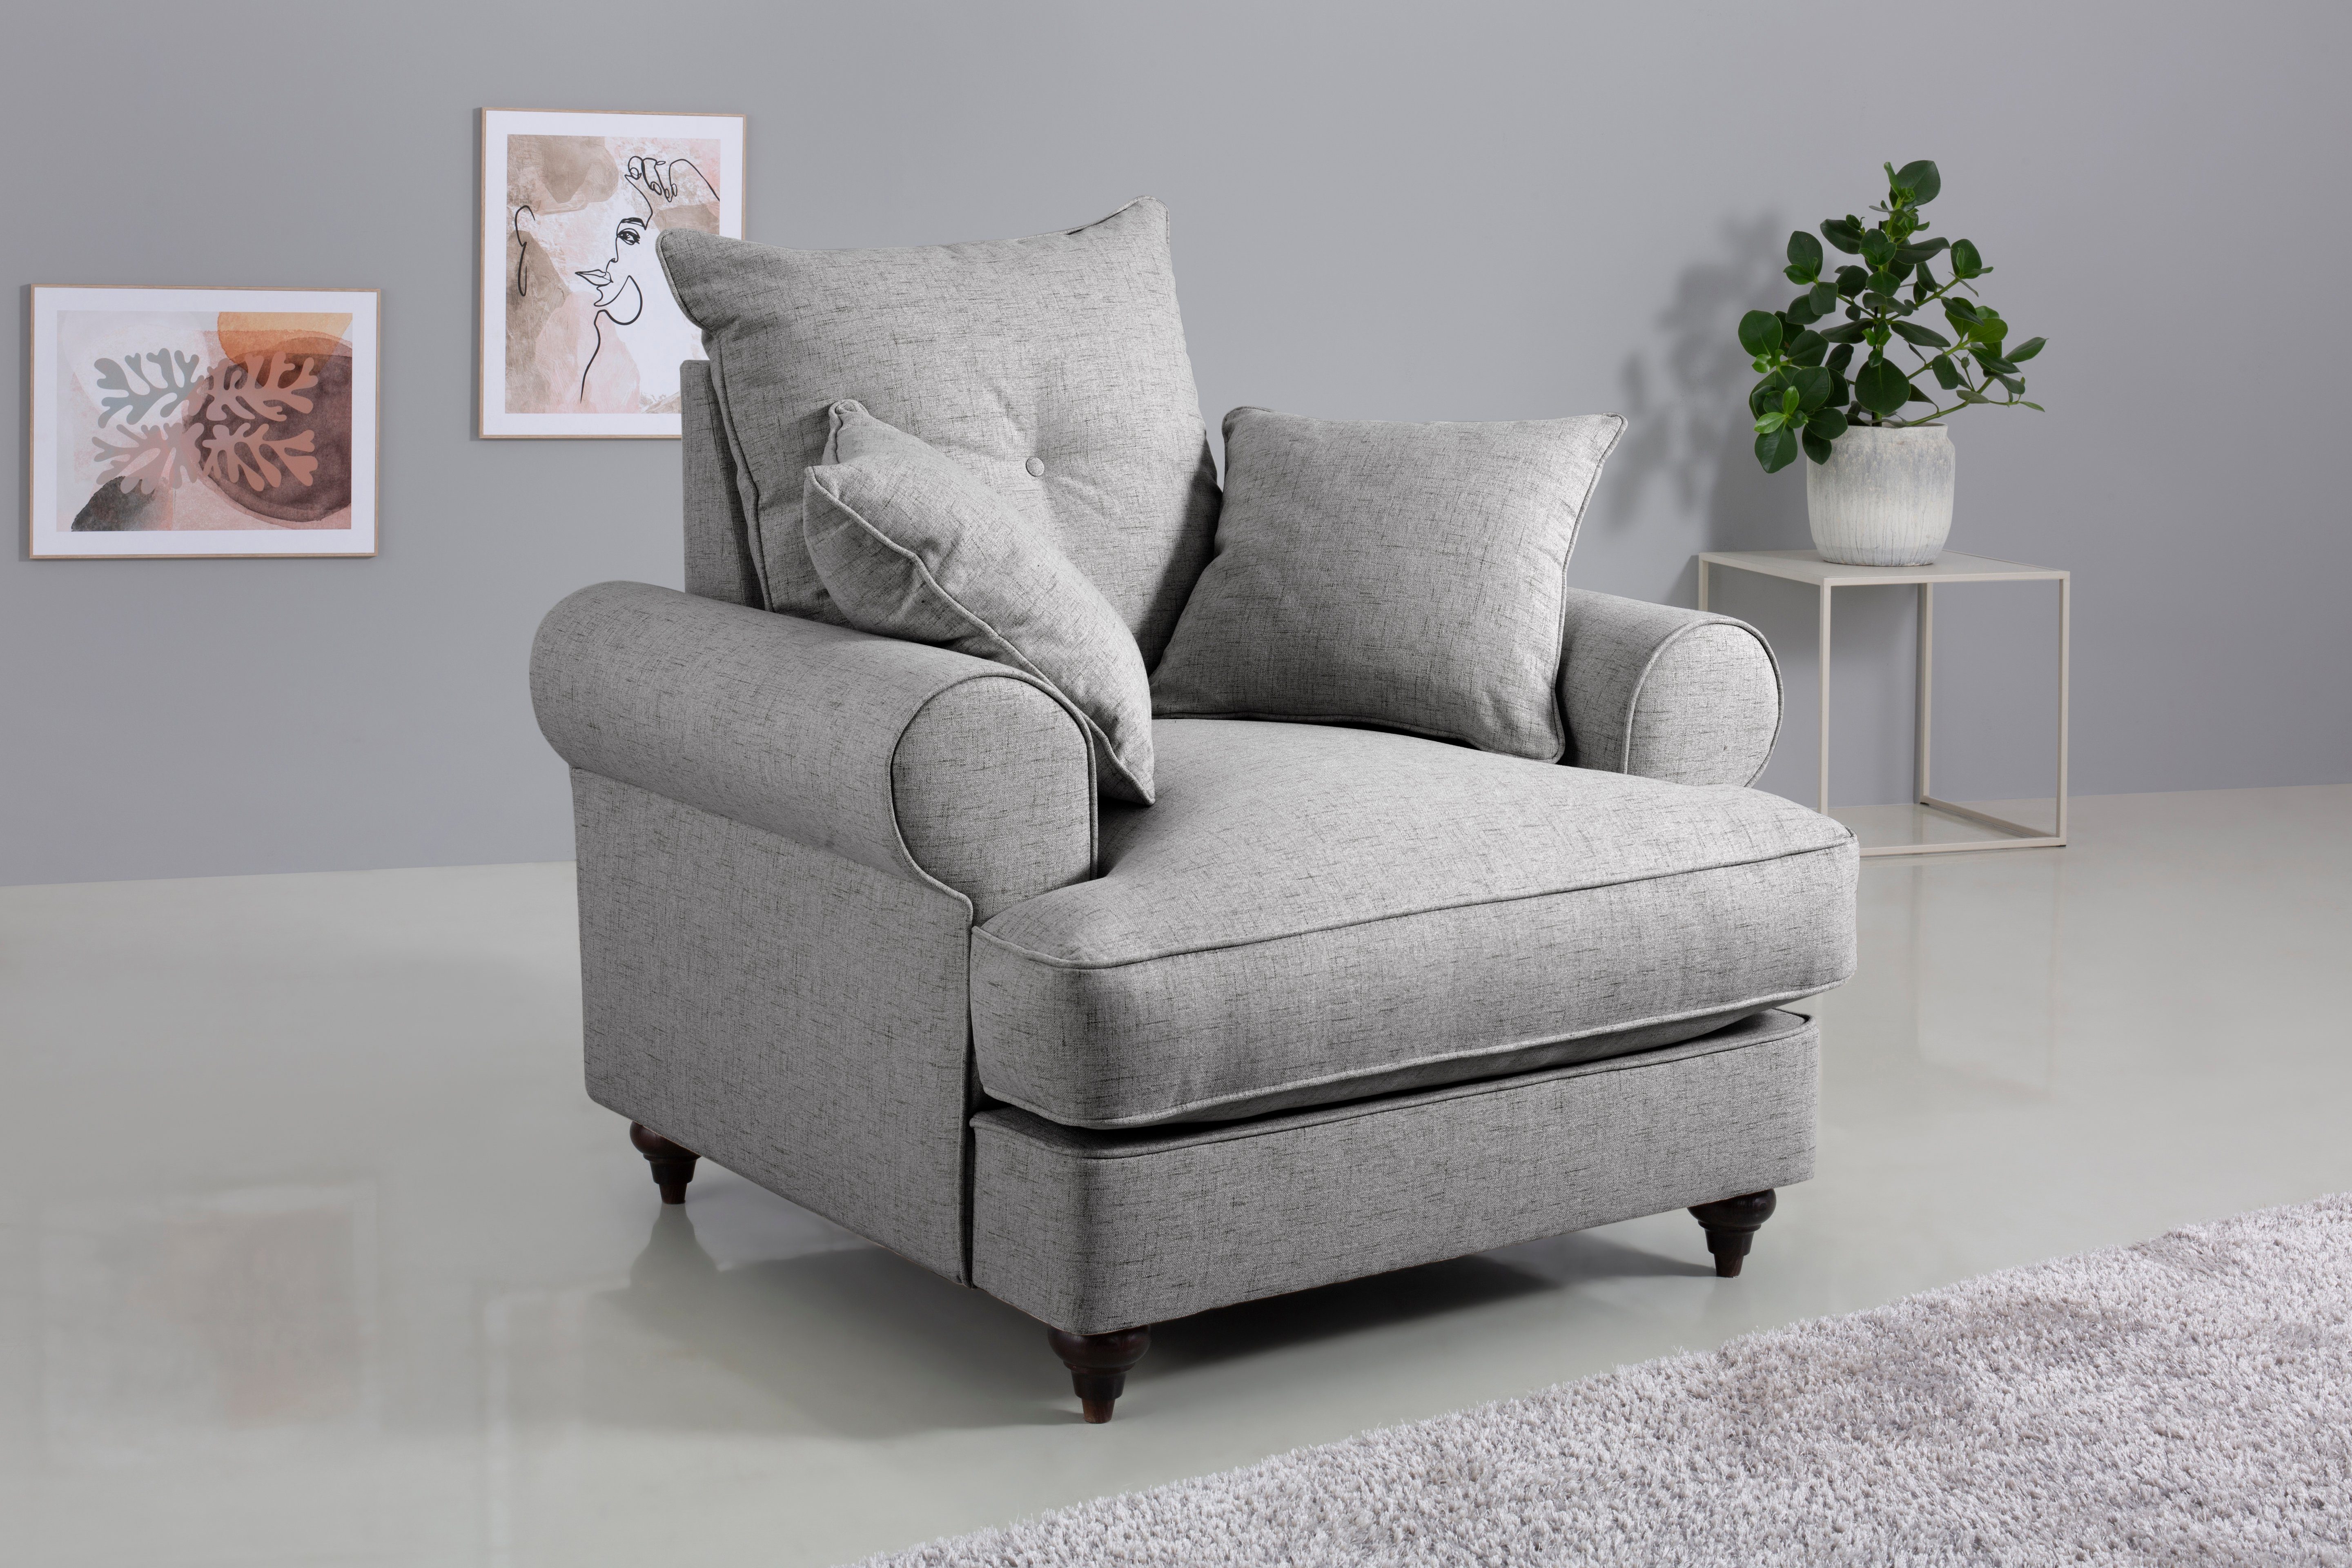 Home affaire Sessel Bloomer, mit hochwertigem Kaltschaum, in verschiedenen Farben erhältlich light grey